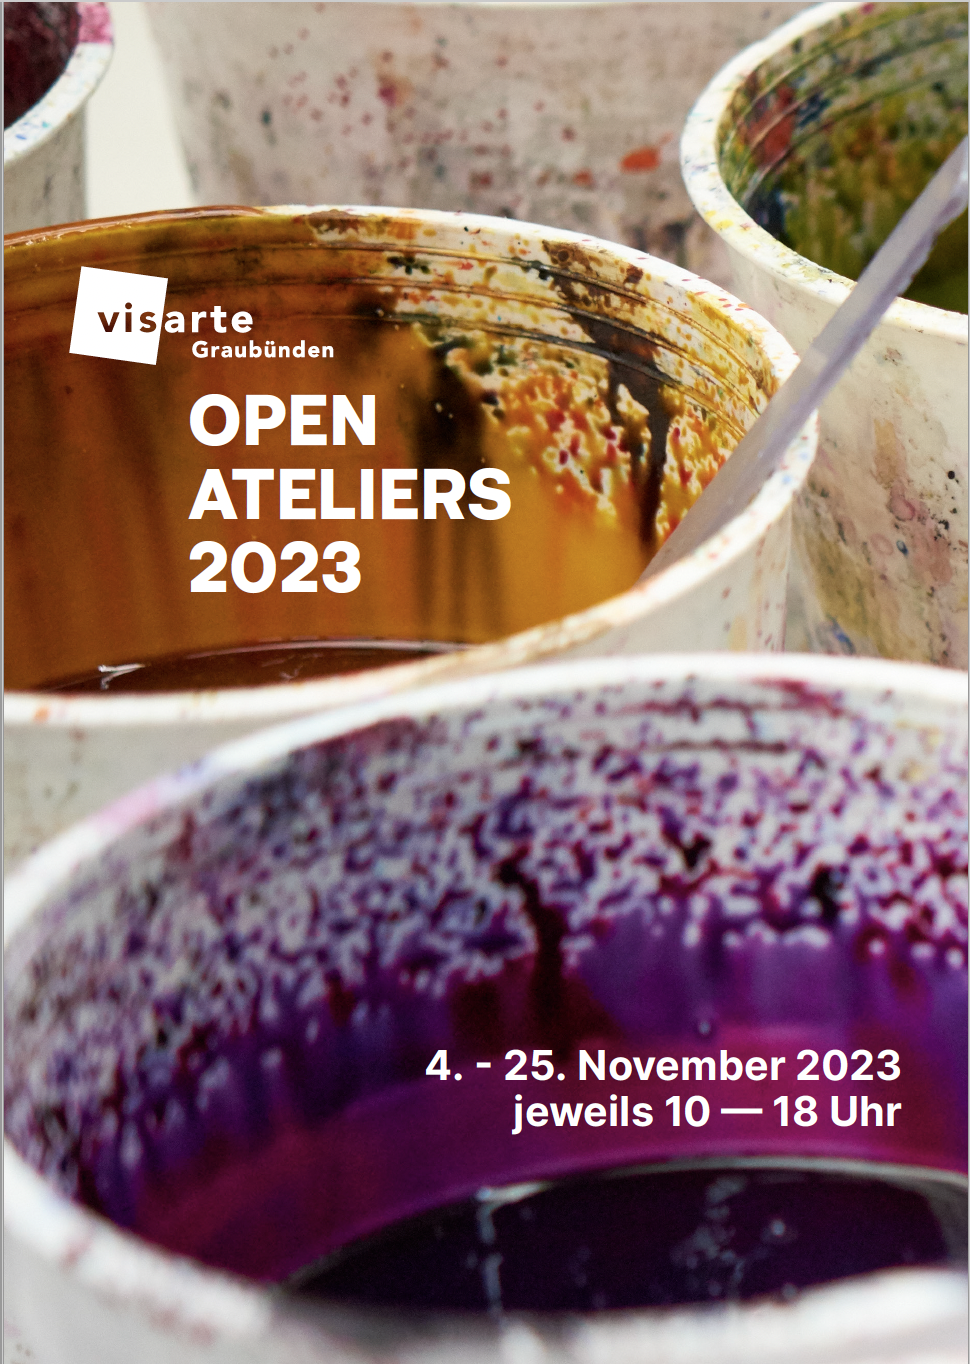 Werner Casty und viele andere: Open Ateliers 2023 (Visarte Graubünden)